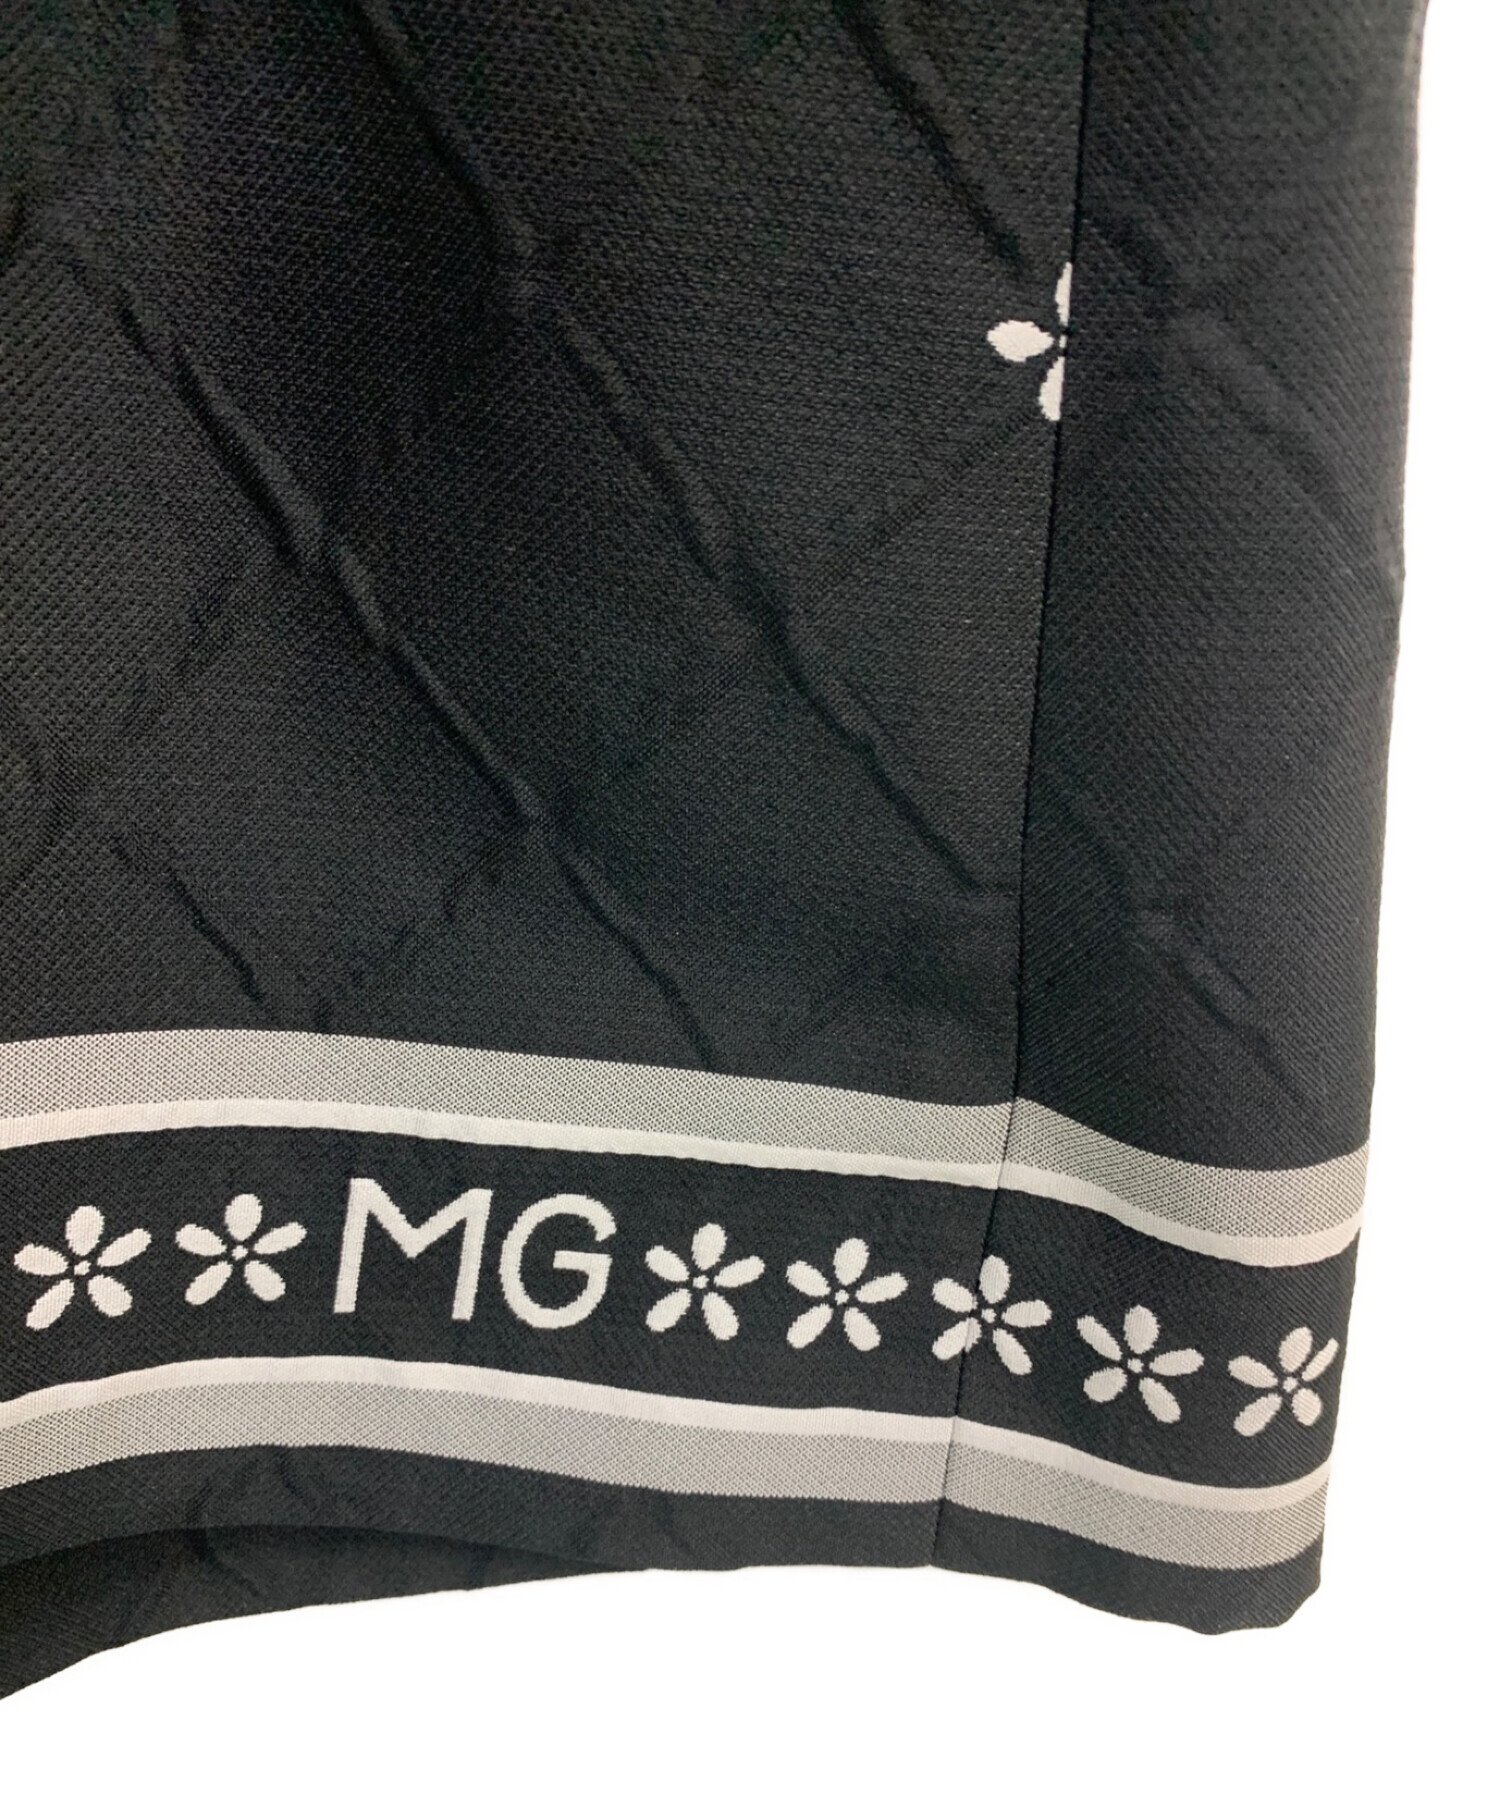 M'S GRACY (エムズグレイシー) ロゴ入りジャンパースカート ブラック サイズ:36